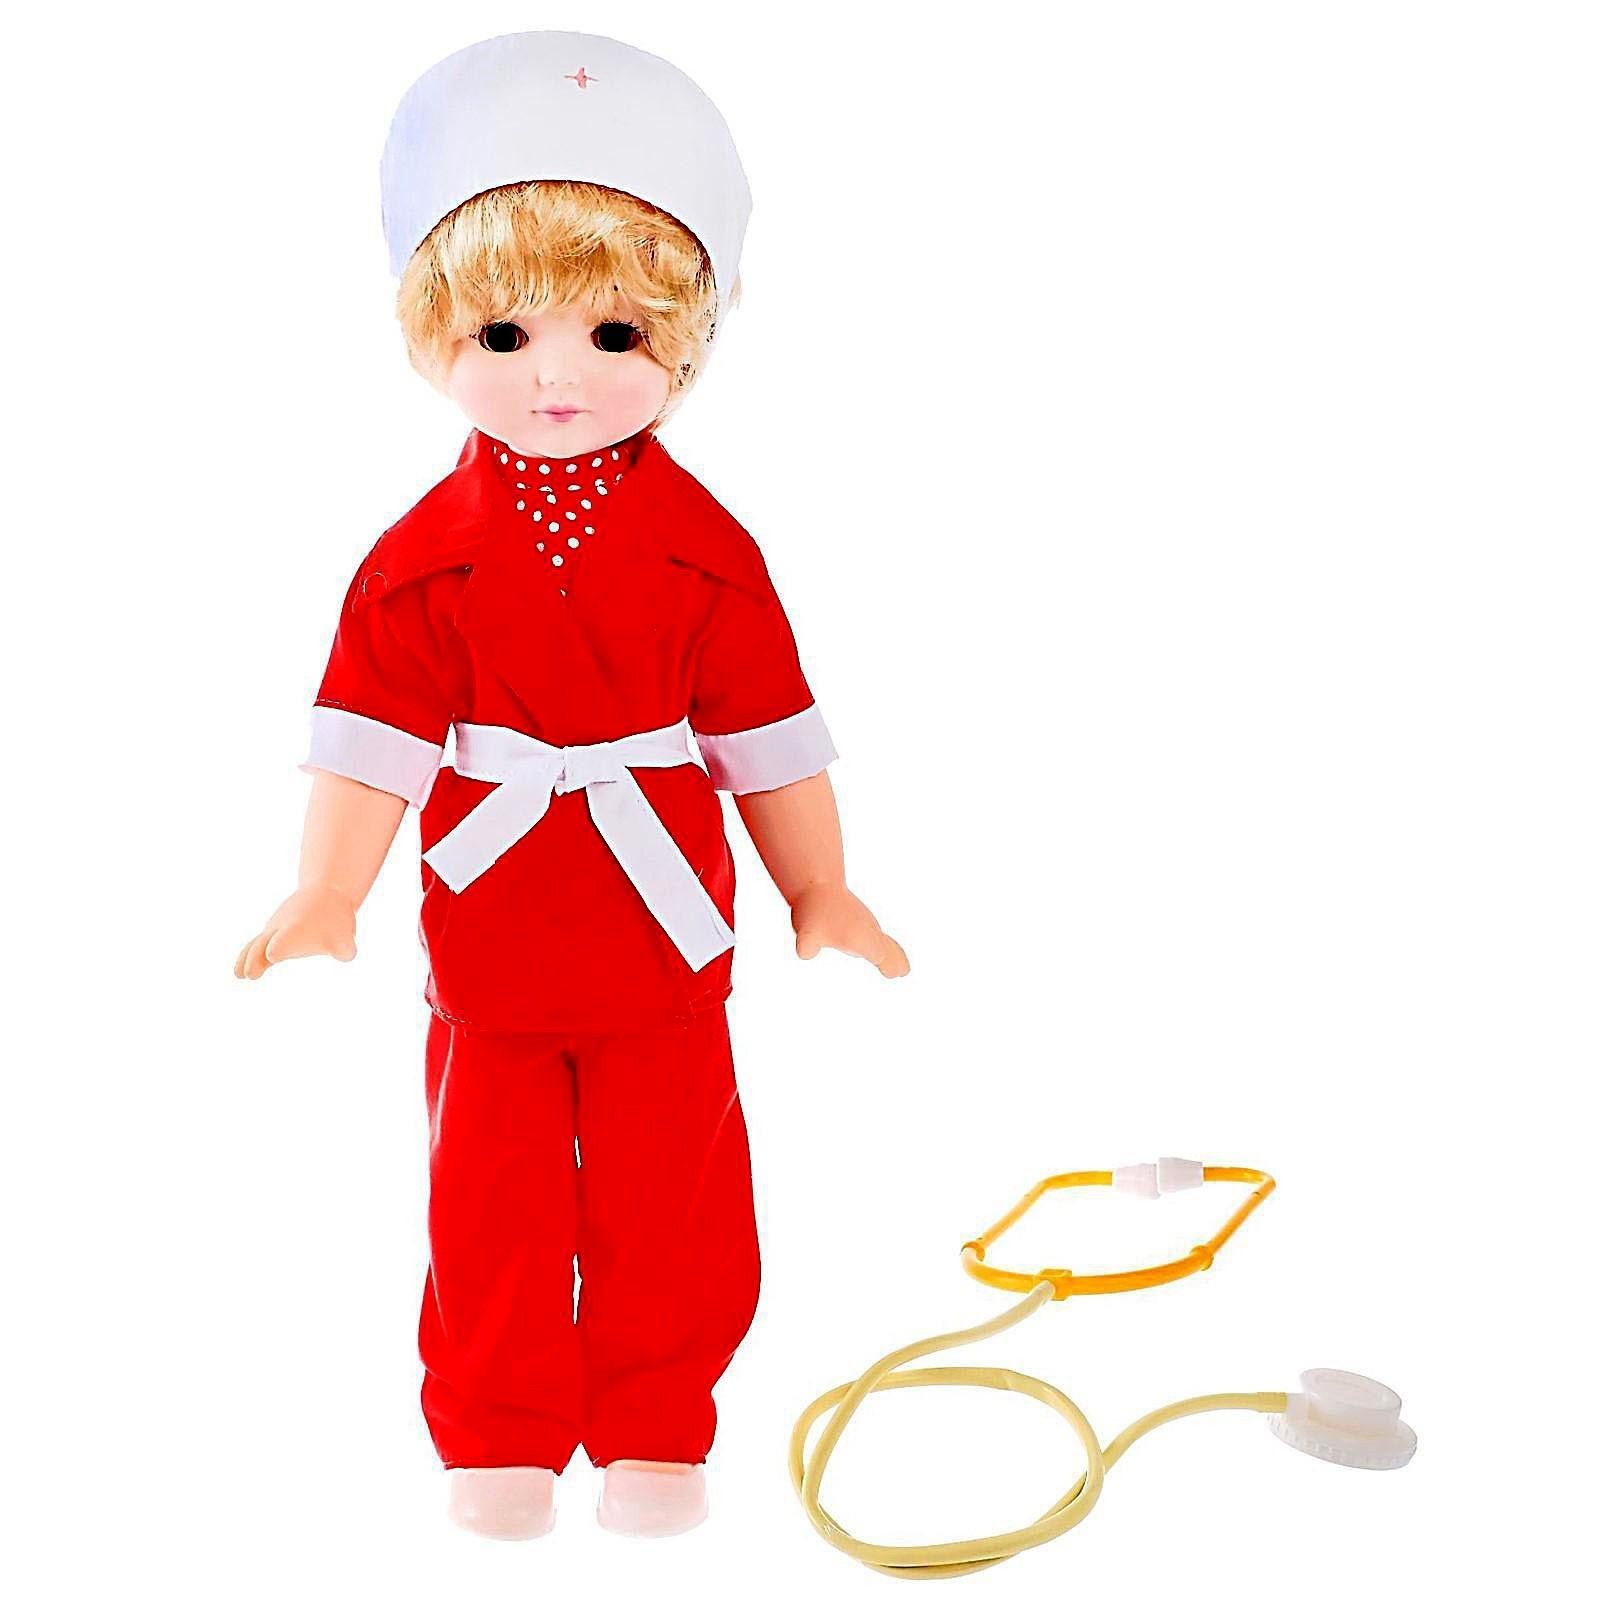 Купить кукла Мир кукол Врач 45 см в ассортименте 2521524, цены на Мегамаркет